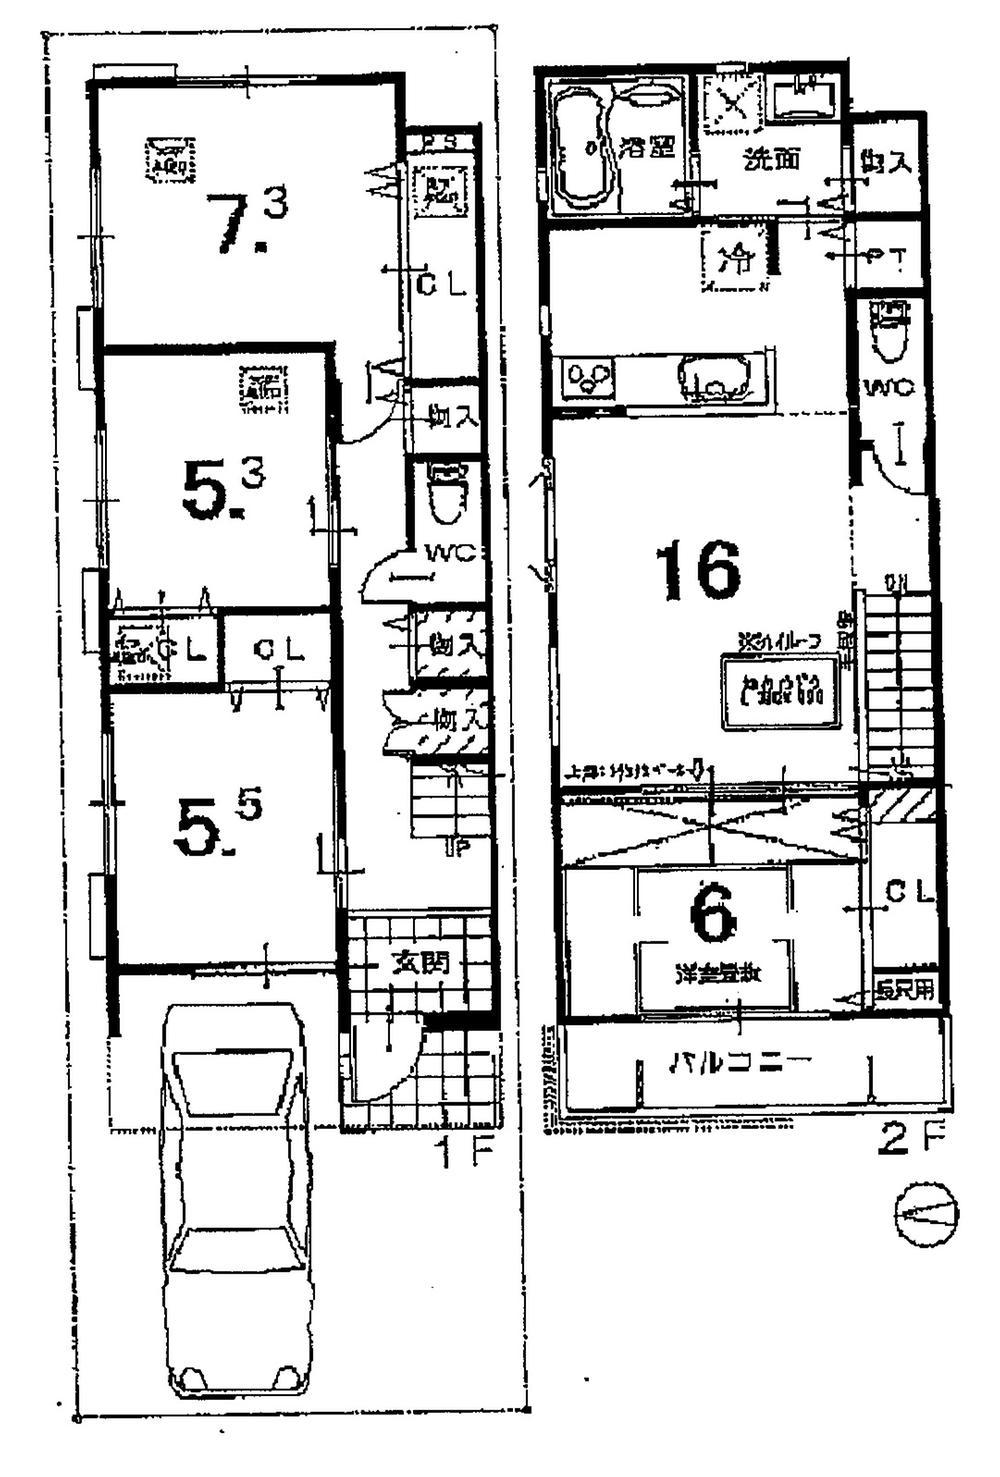 Floor plan. Is a floor plan of the property.